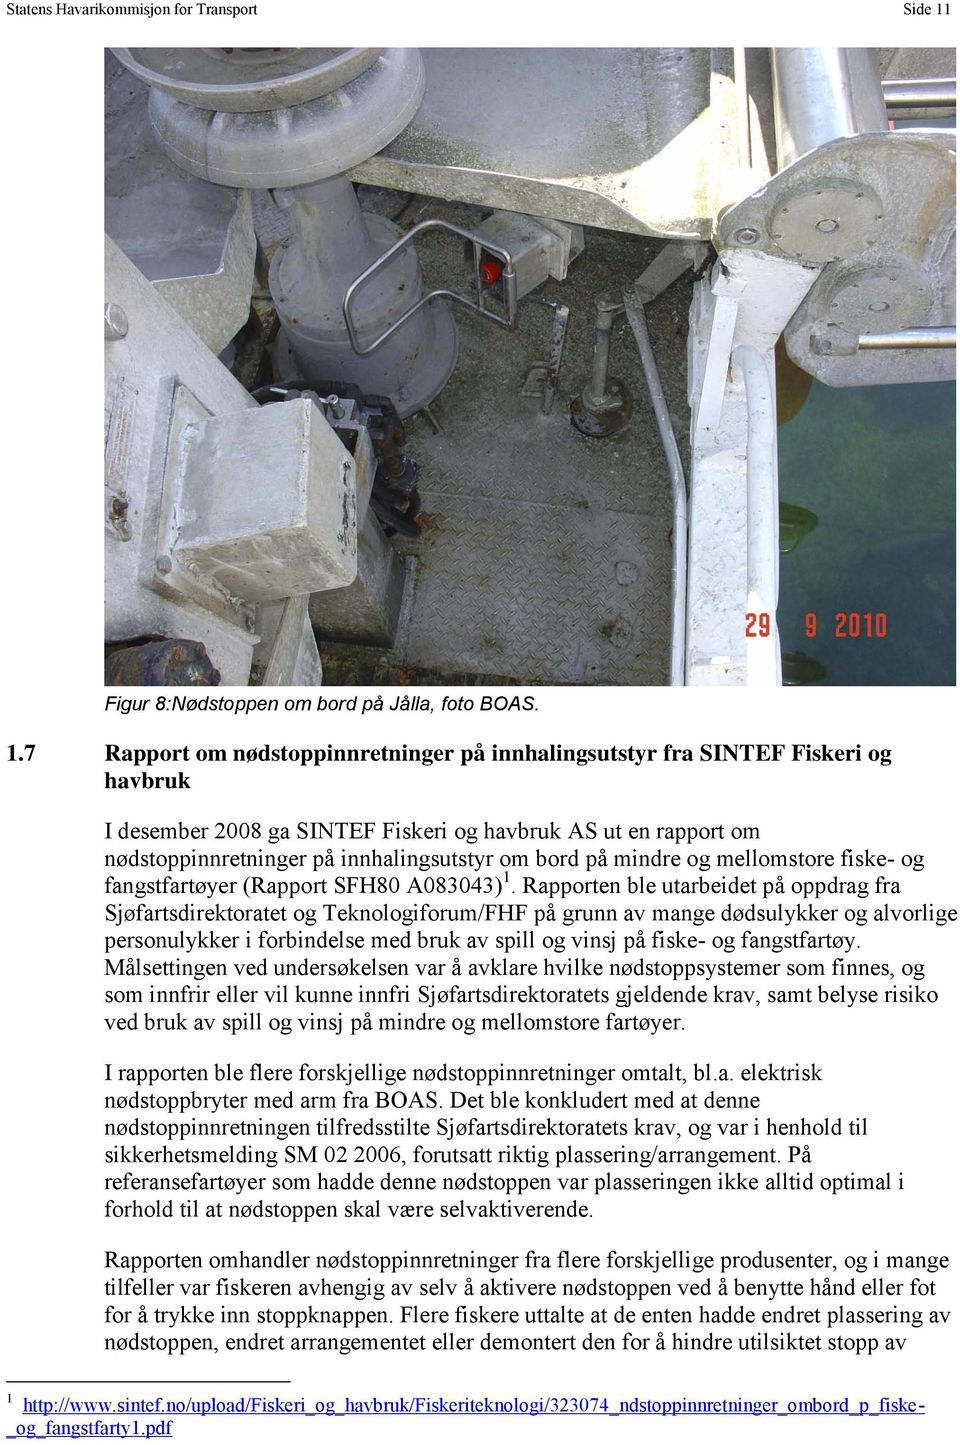 7 Rapport om nødstoppinnretninger på innhalingsutstyr fra SINTEF Fiskeri og havbruk I desember 2008 ga SINTEF Fiskeri og havbruk AS ut en rapport om nødstoppinnretninger på innhalingsutstyr om bord